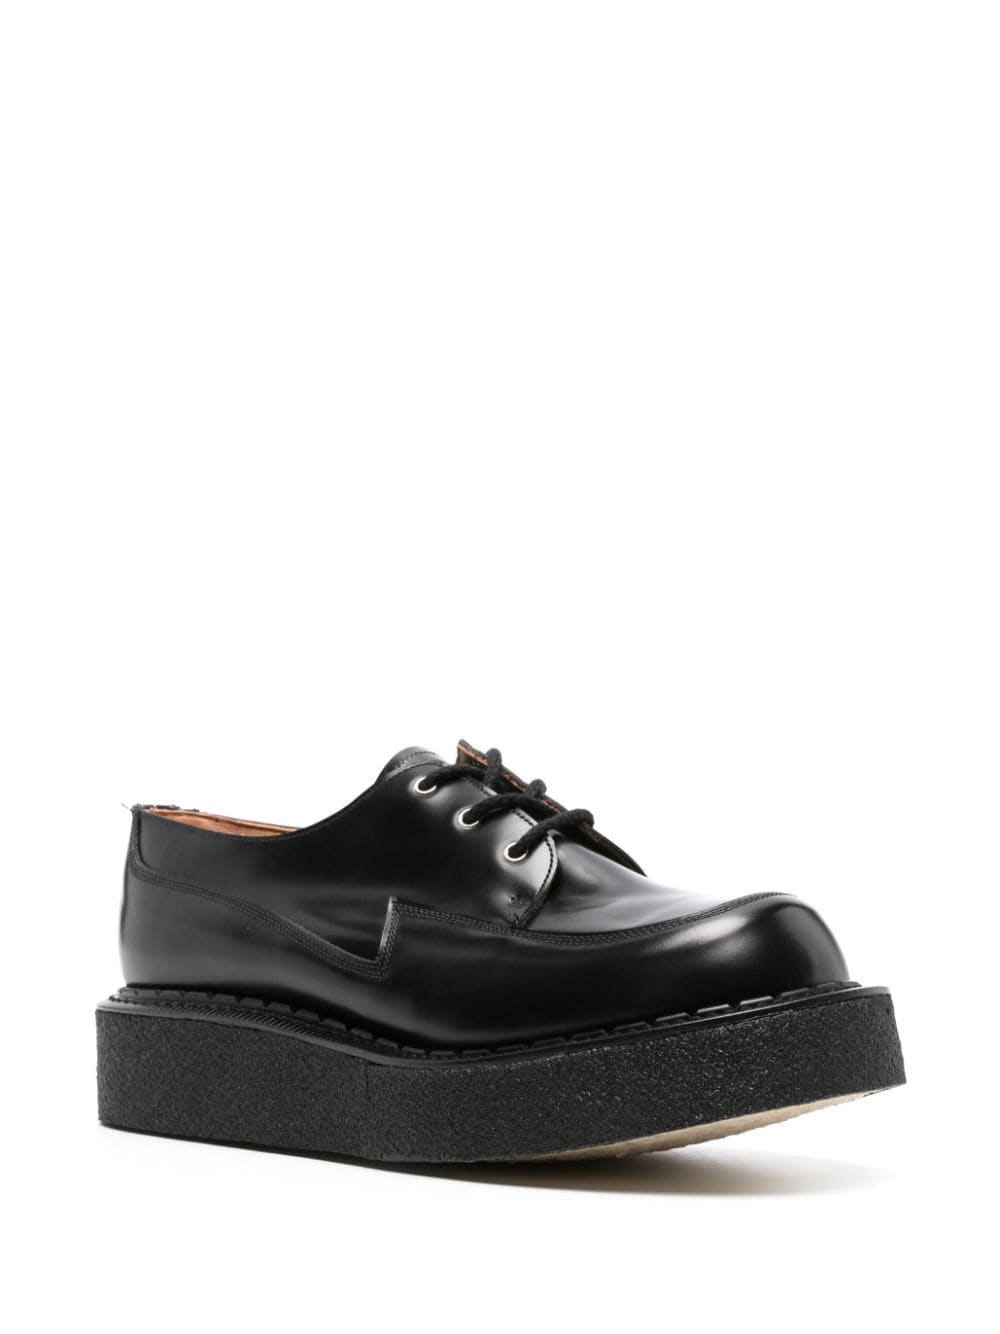 Comme des Garçons Homme Plus leather platform derby shoes - Zwart